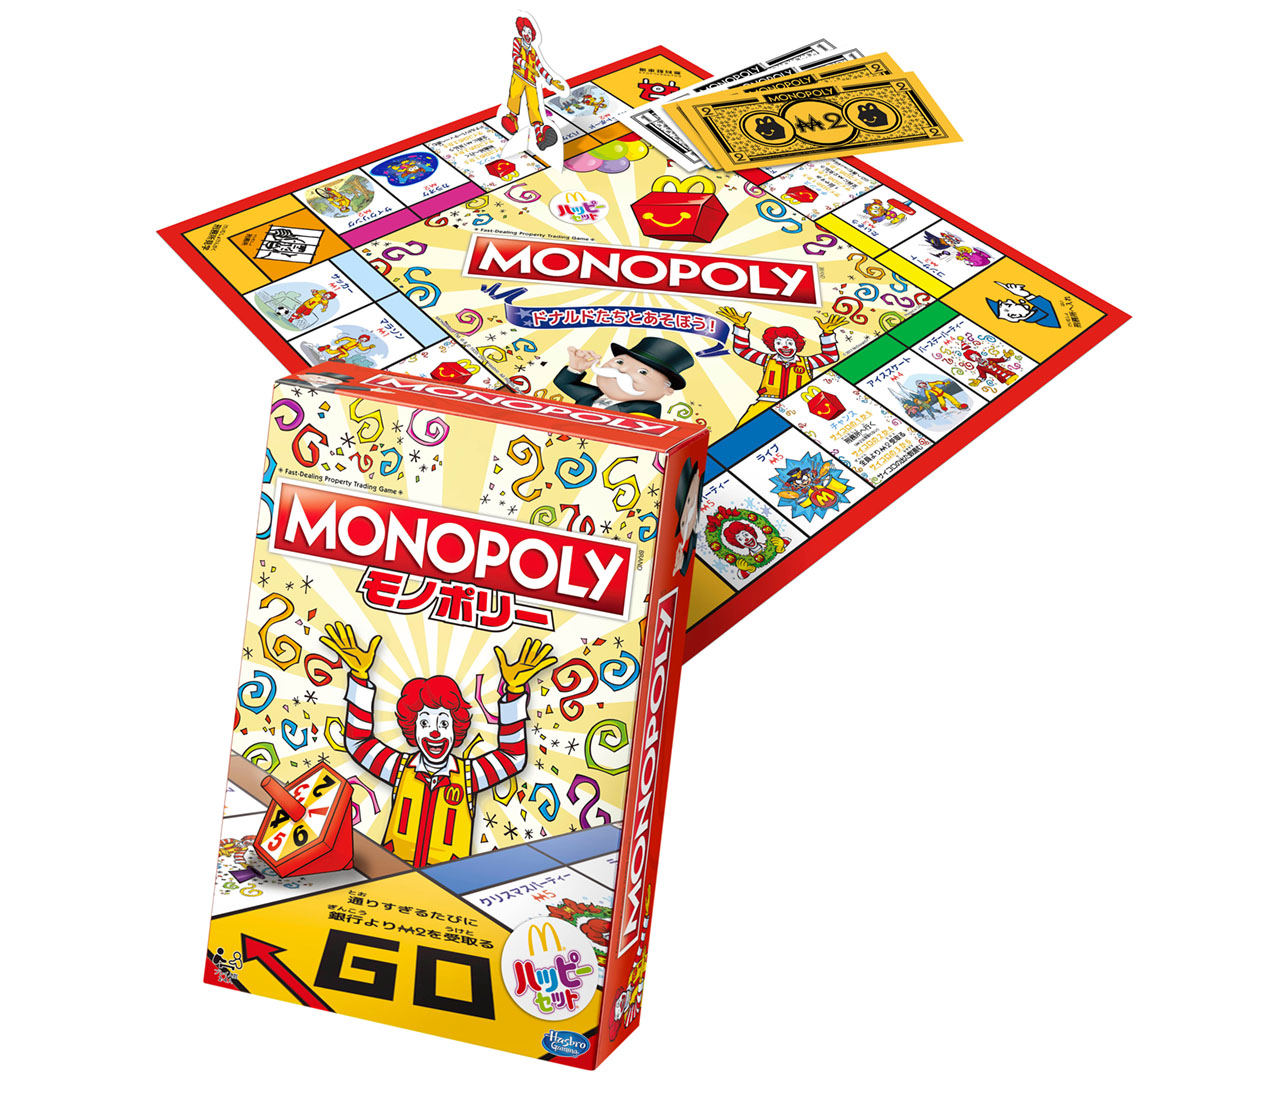 ボードゲーム「モノポリー」のマクドナルドオリジナルバージョンです。ドナルドたちがスポーツや音楽など、様々なアクティビティを楽しむマスを手にいれて、一番を目指します